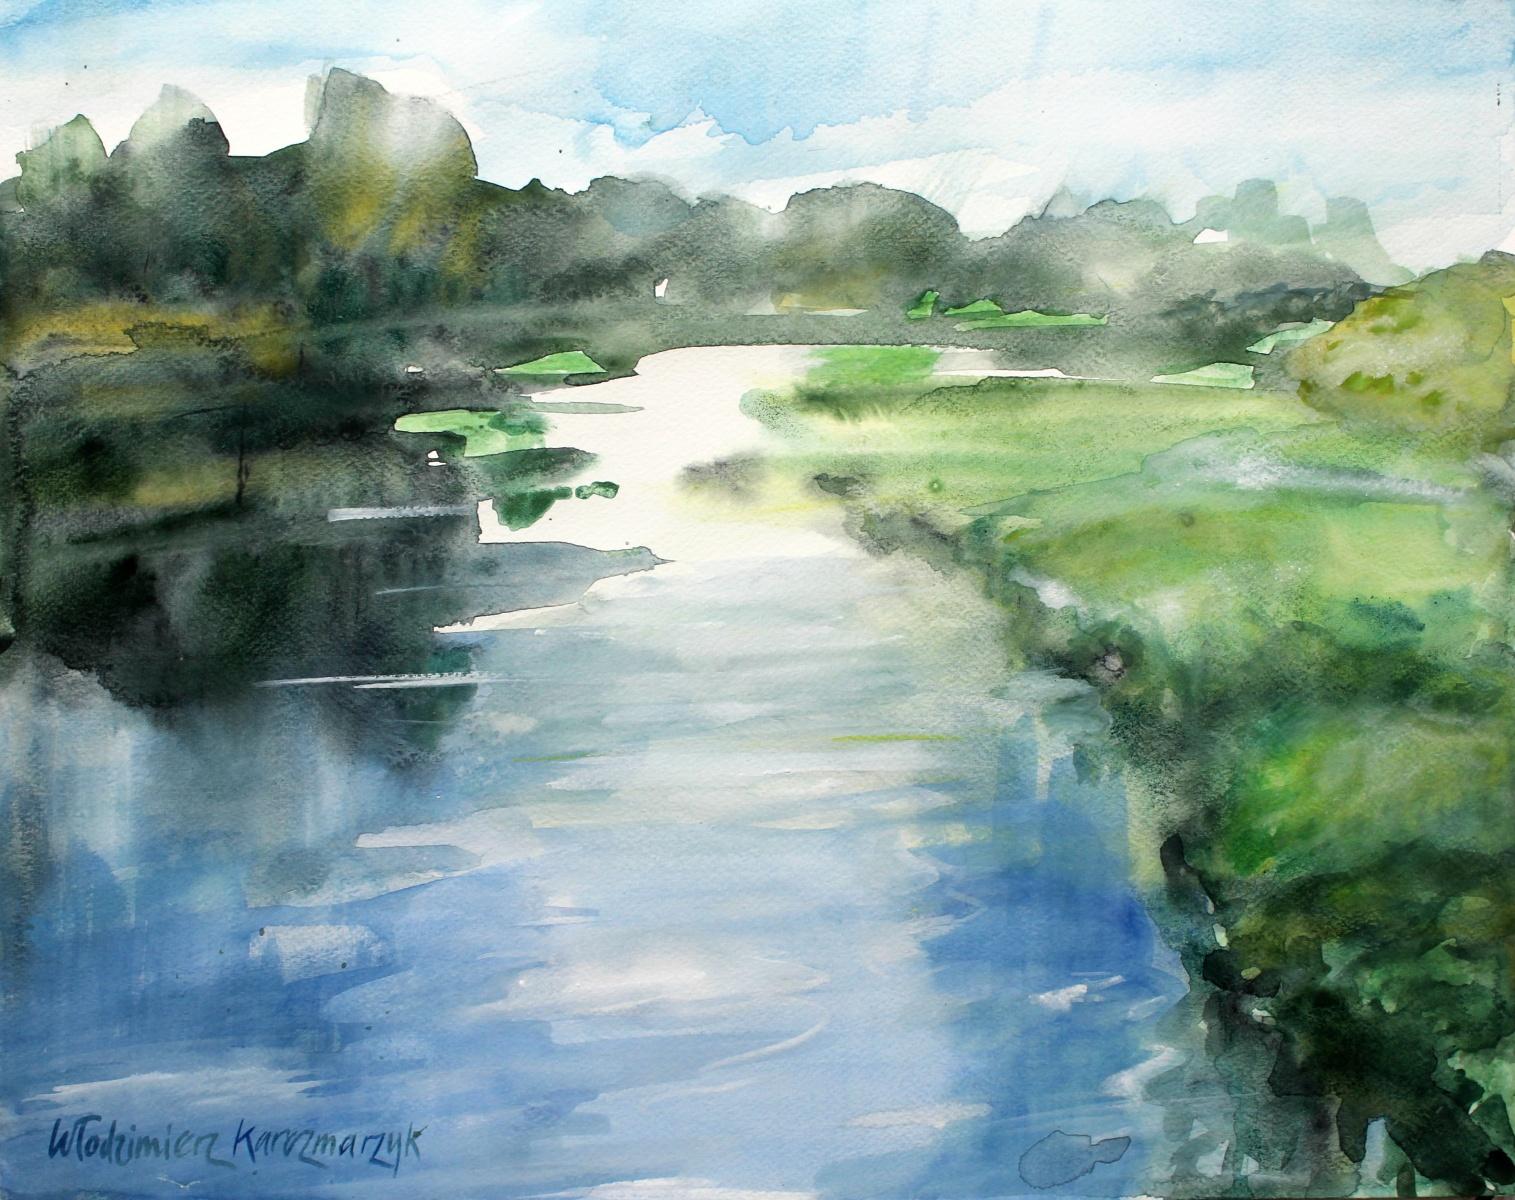 Włodzimierz Karczmarzyk Landscape Art - Near the Ostroda - calm water - XXI century, Watercolor painting, Landscape